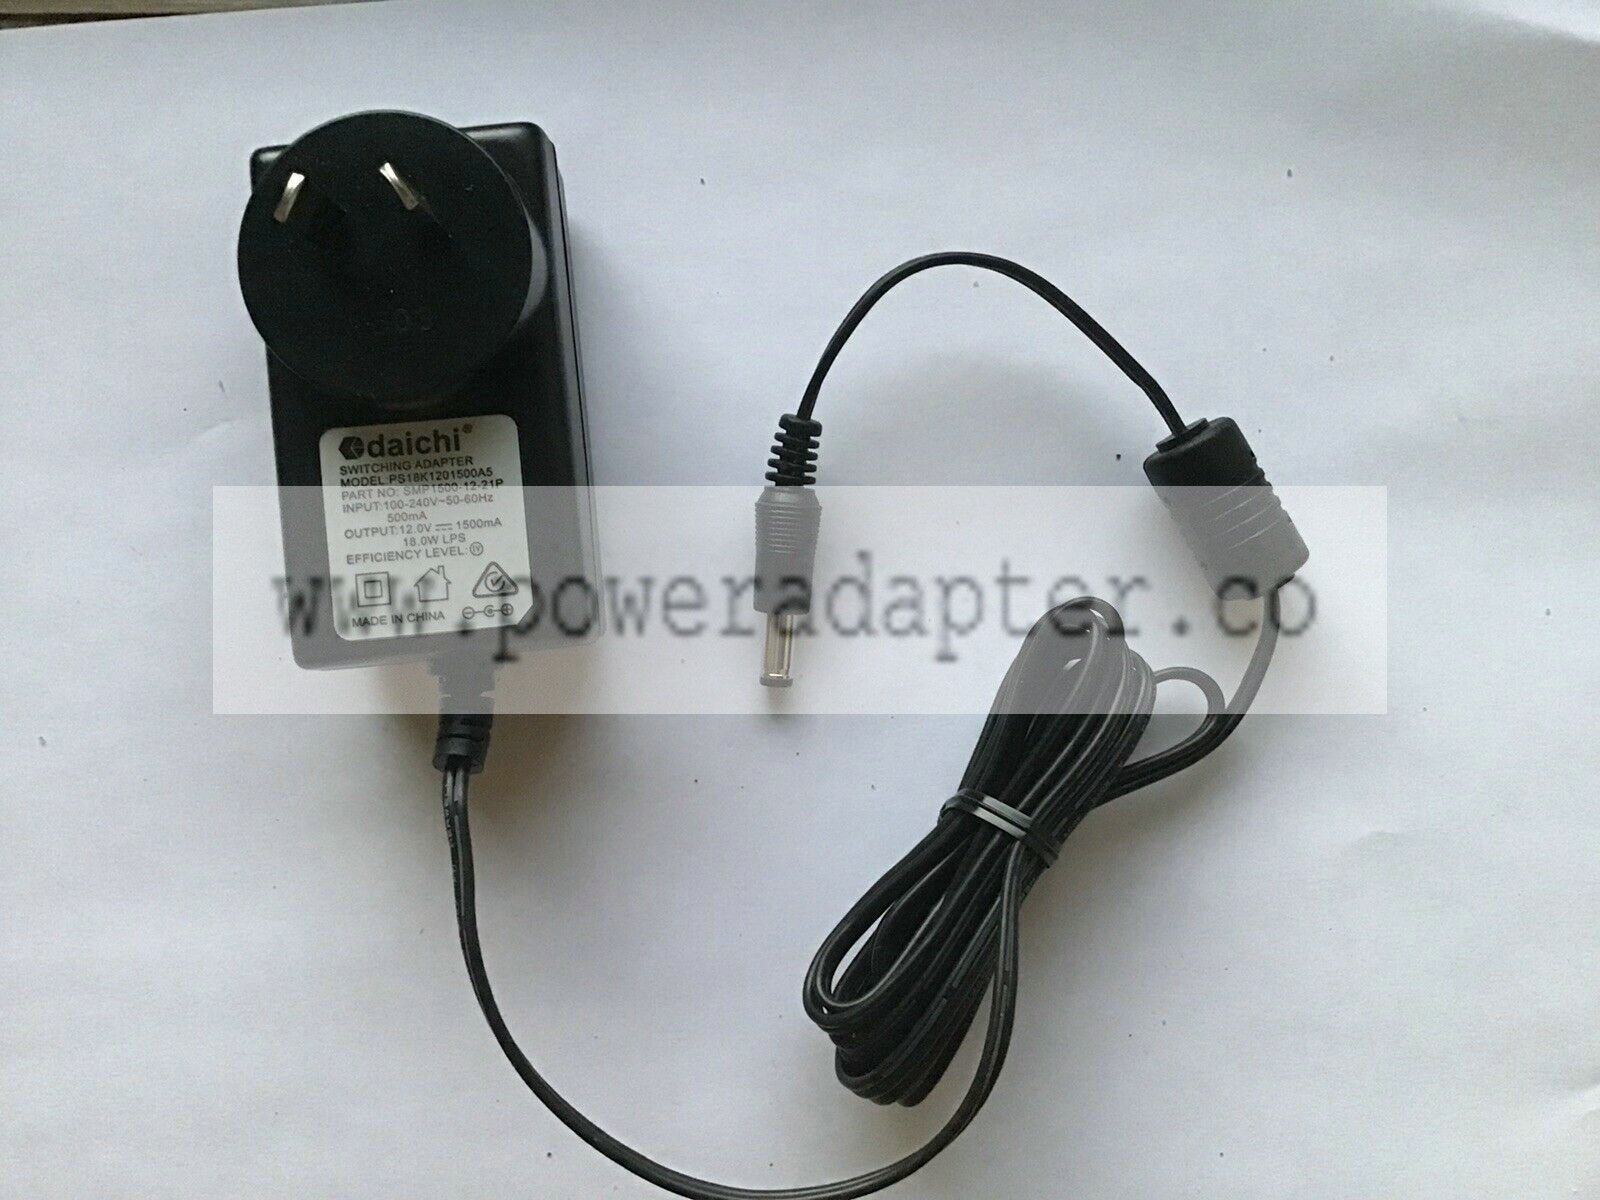 daichi Switching Adapter Input 100-240V~ 50-60Hz 500mA Output 12.0V 1500mA 18.0W Daichi Switching Adapter Input 100-2